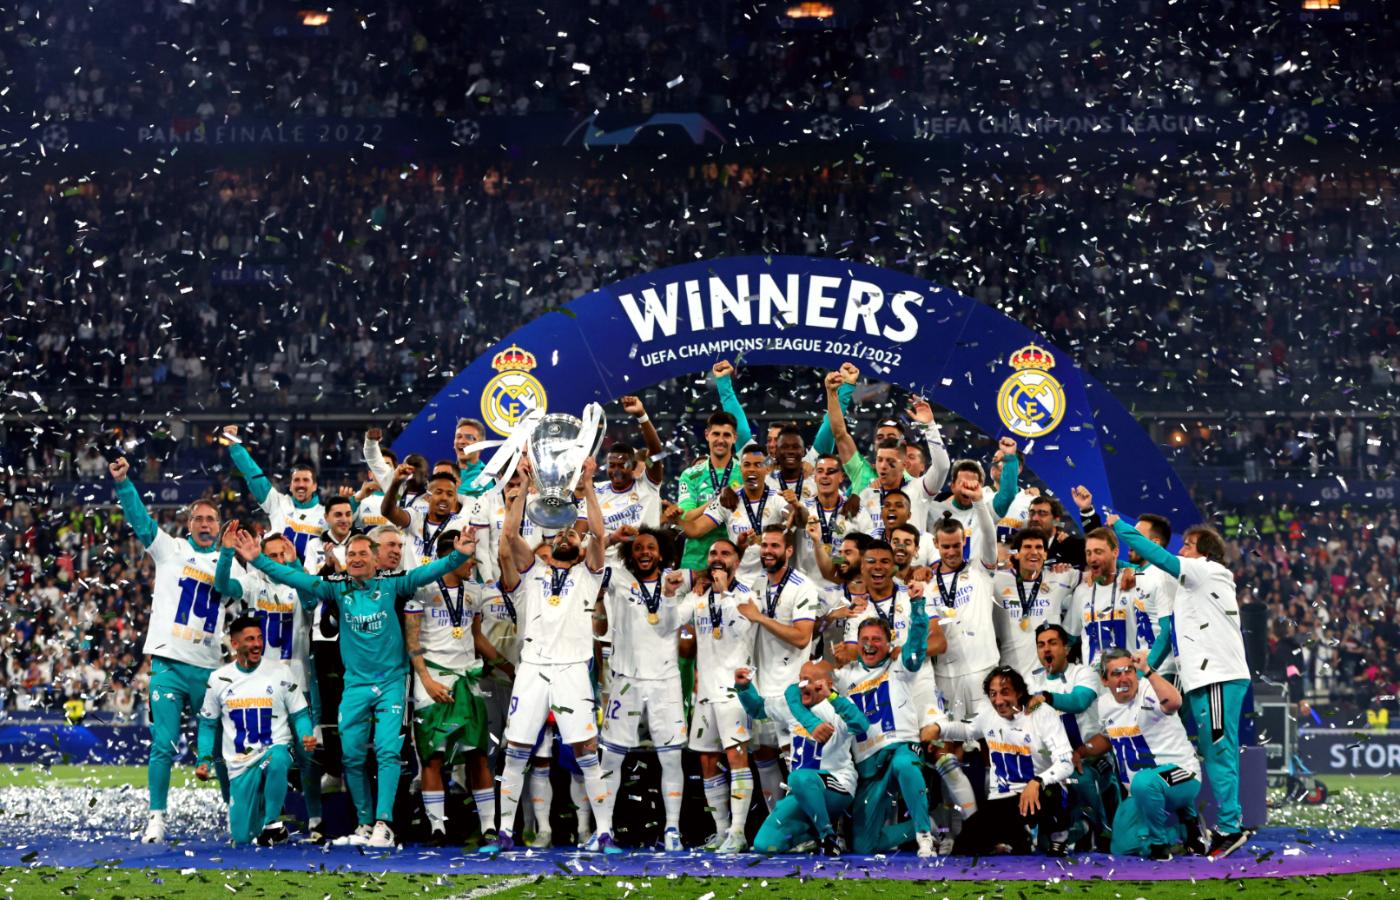 Real Madryt wygrał finał Ligi Mistrzów w Paryżu. 29 maja 2022 r.